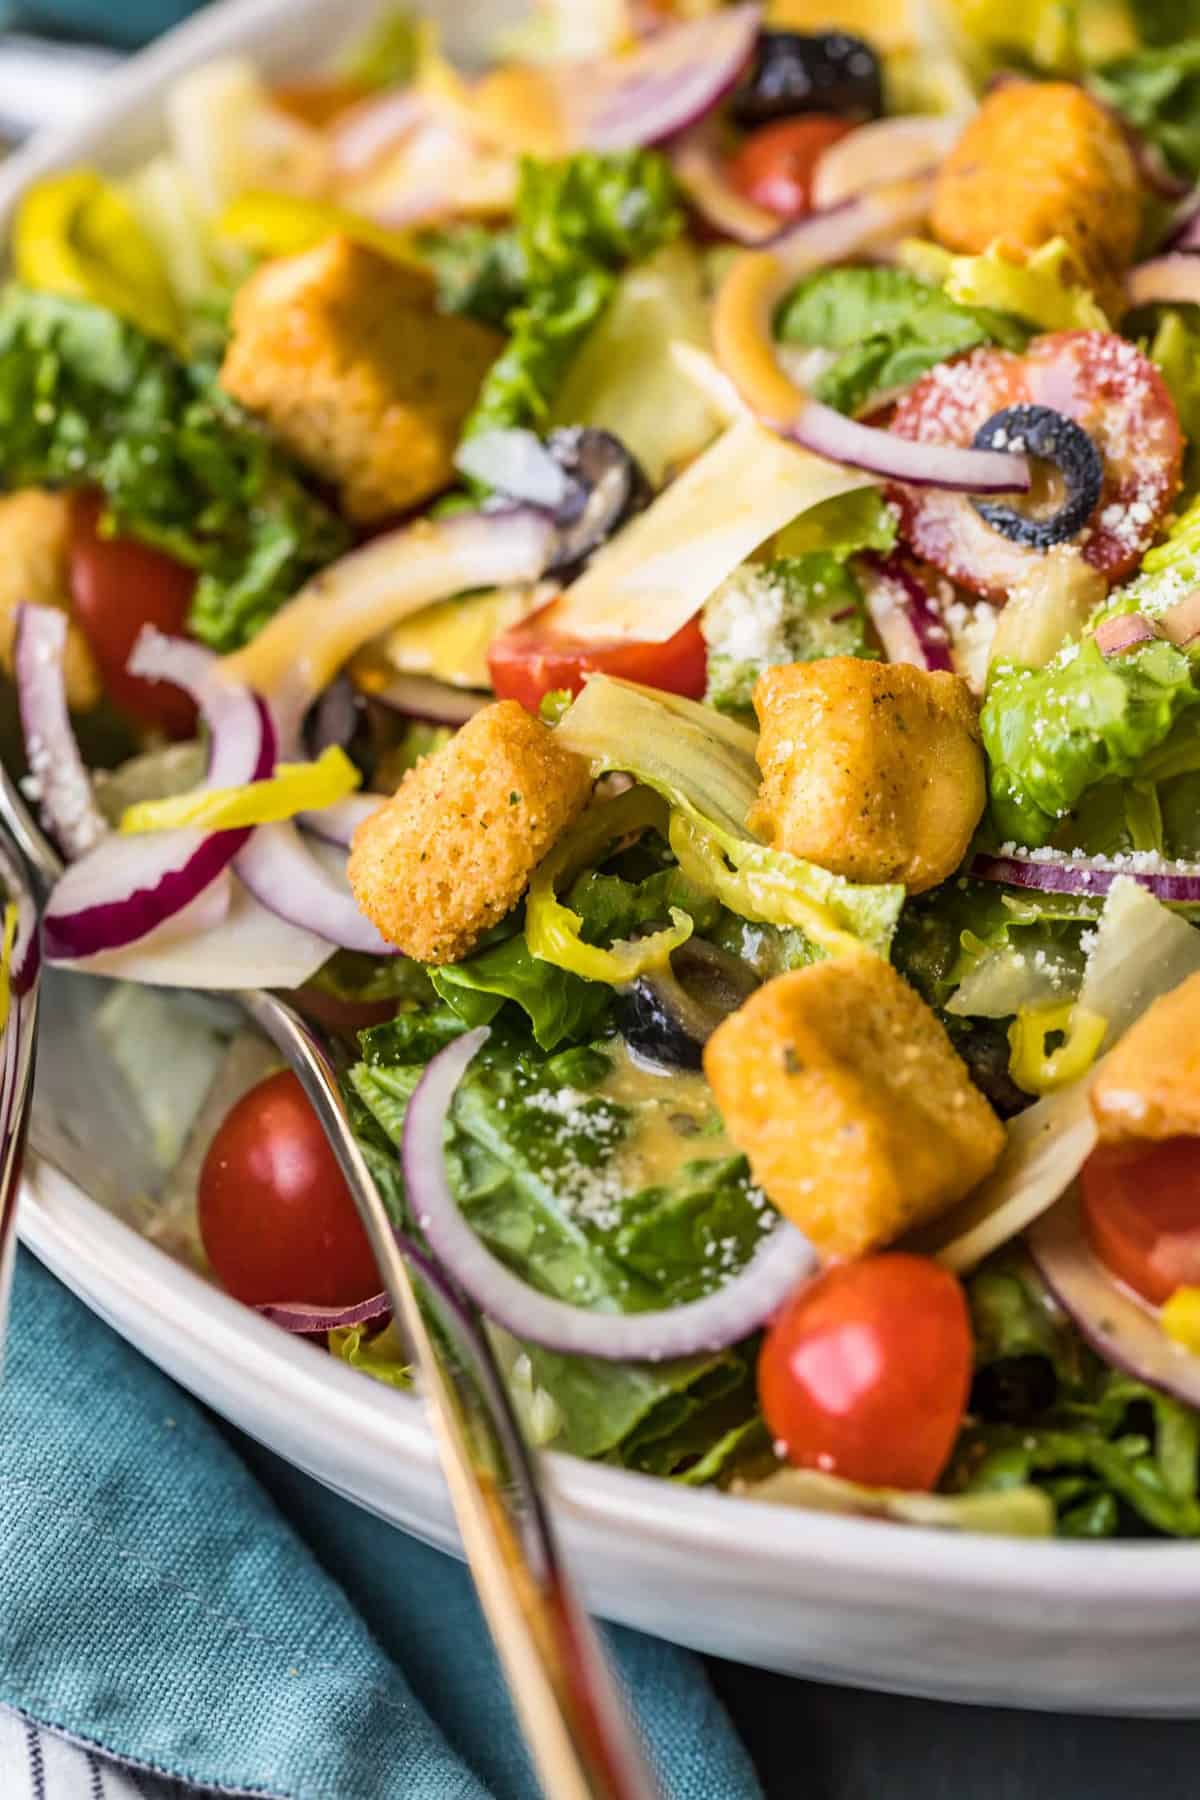 Olive Garden Salad with Copycat Dressing - Cravings Happen